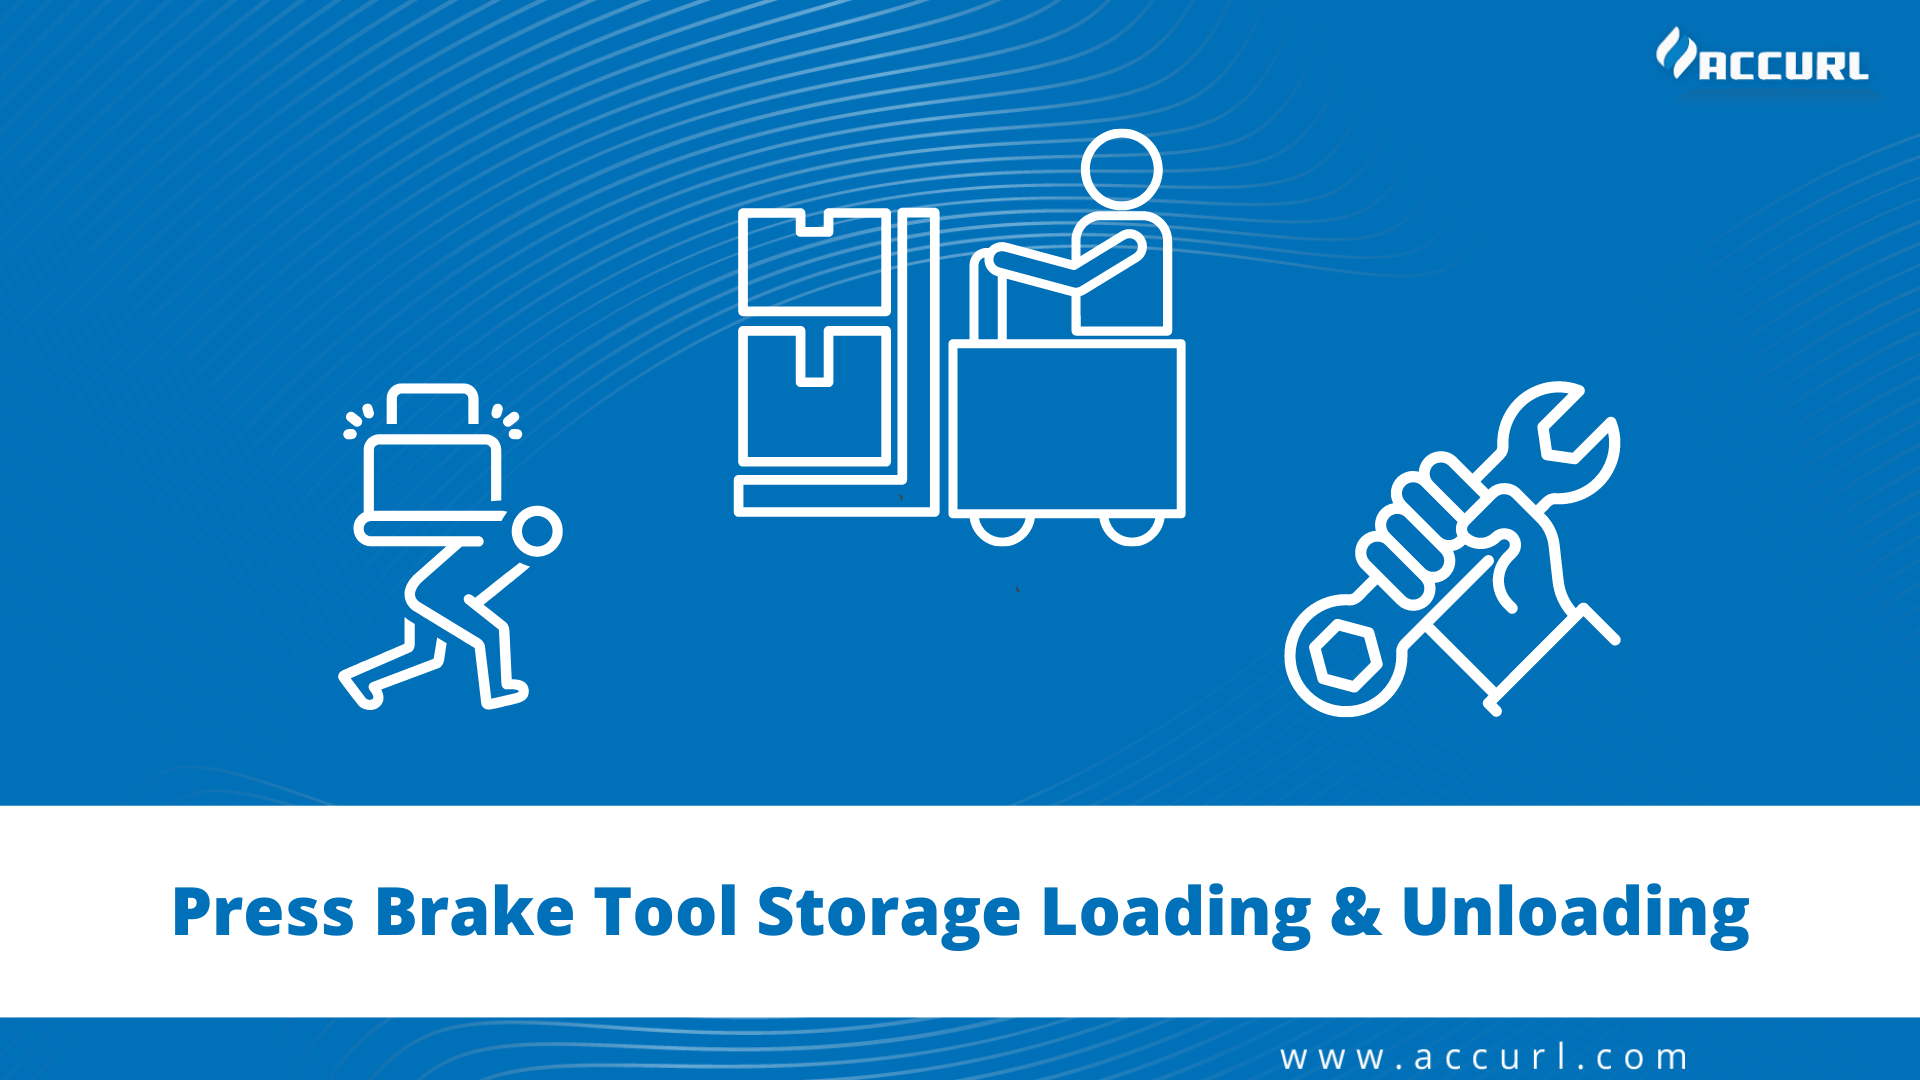 Press Brake Tool Storage Loading & Unloading